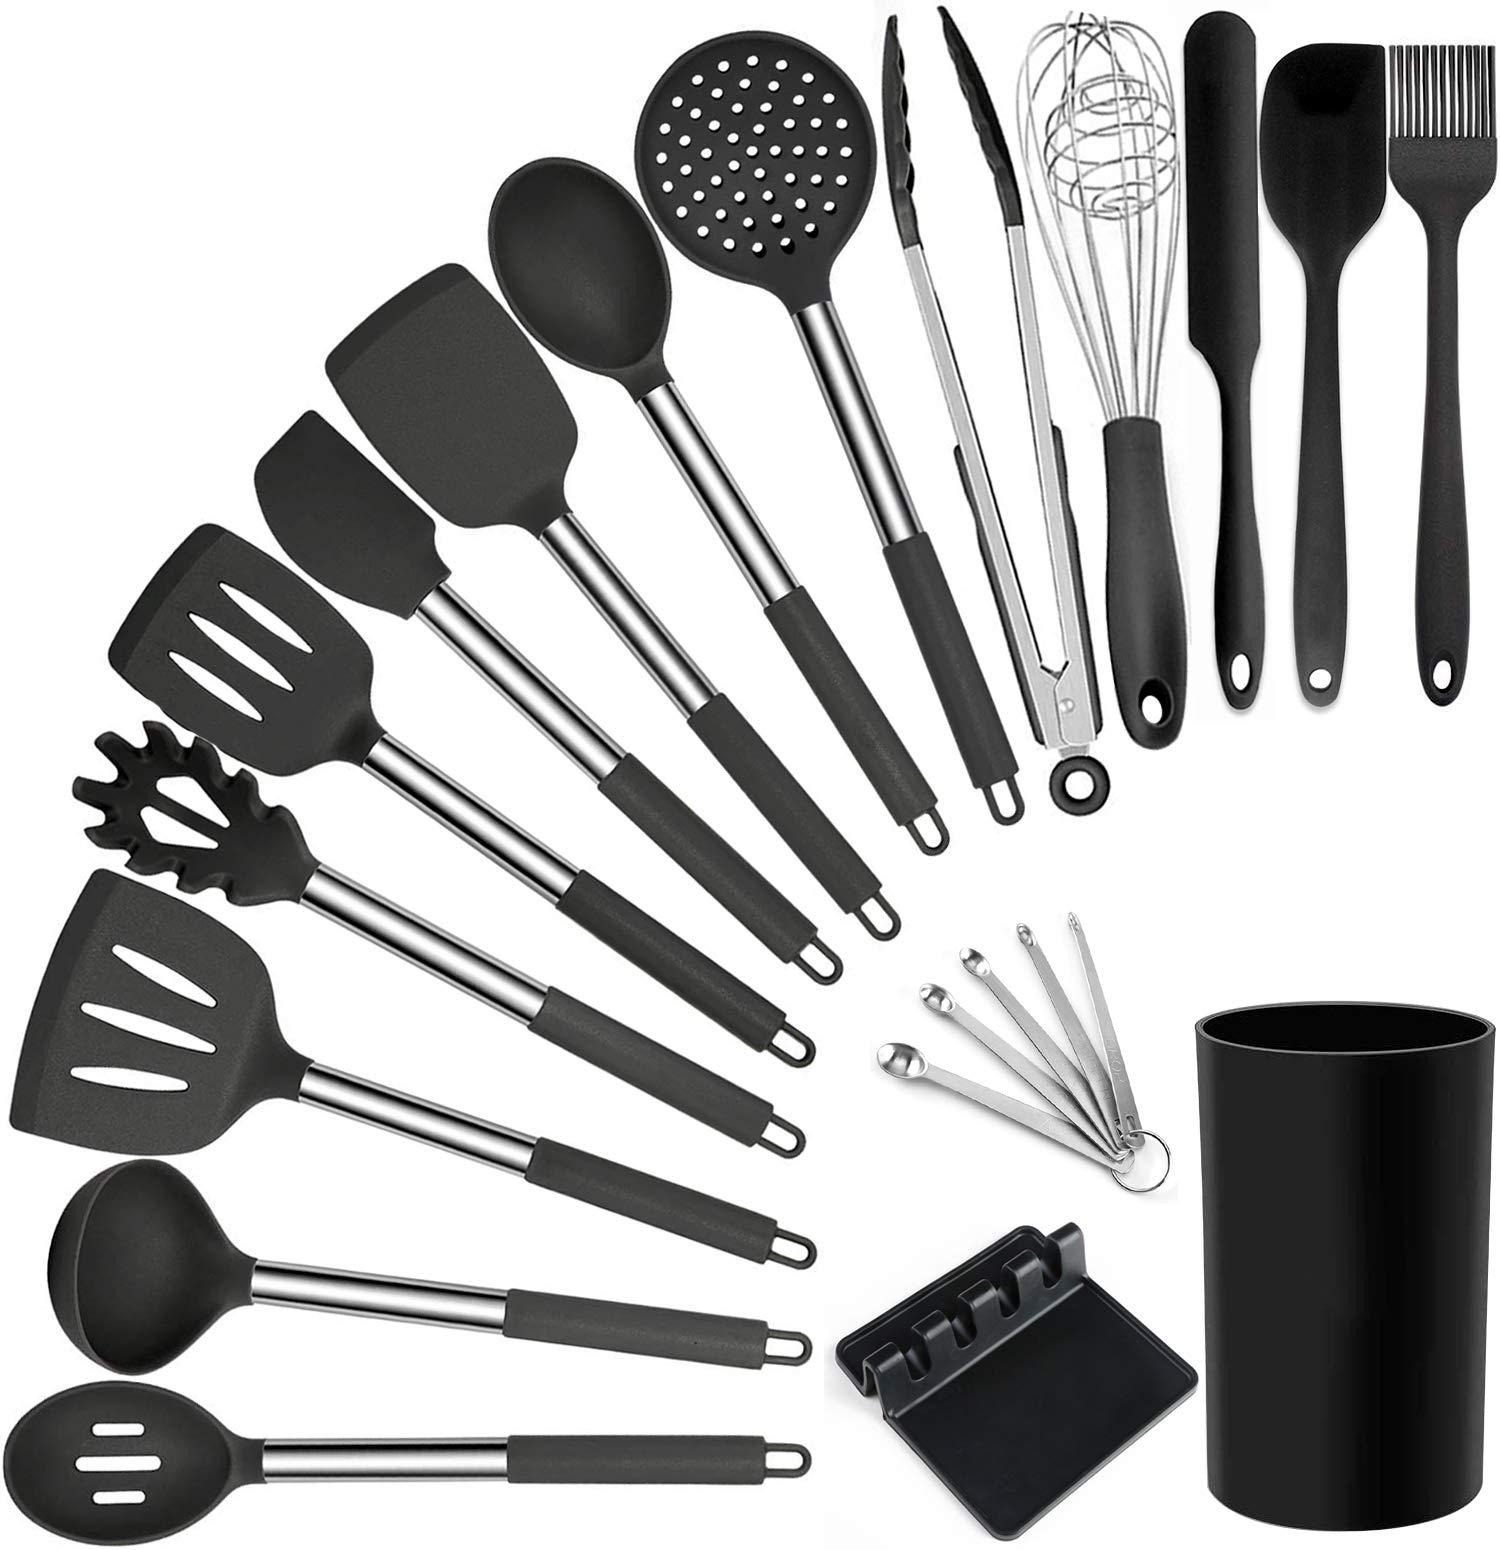 BECBOLDF kitchen utensils set - 21 silicone cooking utensils